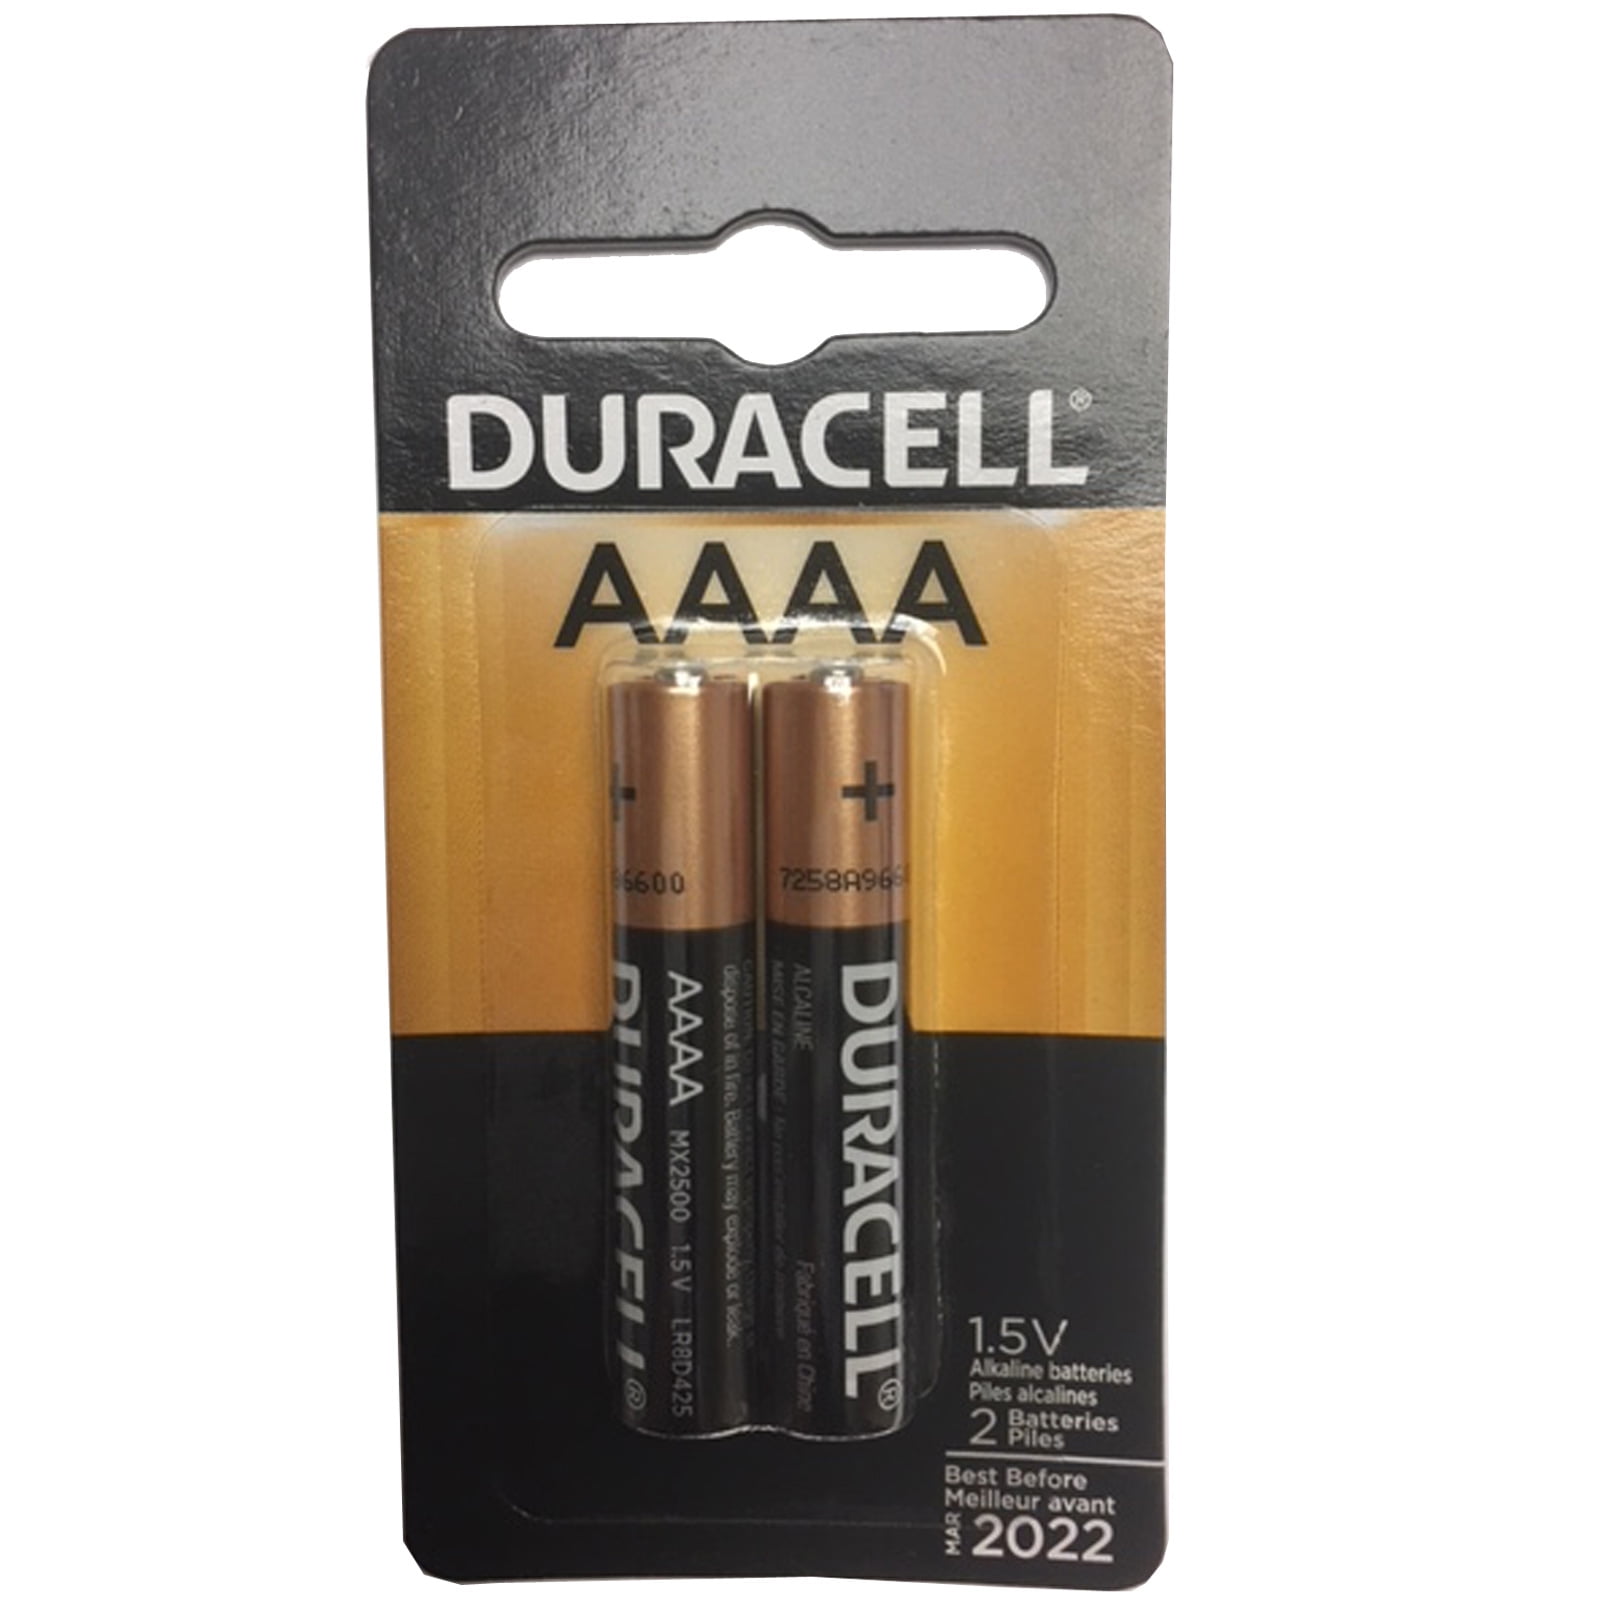 Duracell Ultra AAAA Alkaline Battery 1.5V LR8D425, E96 